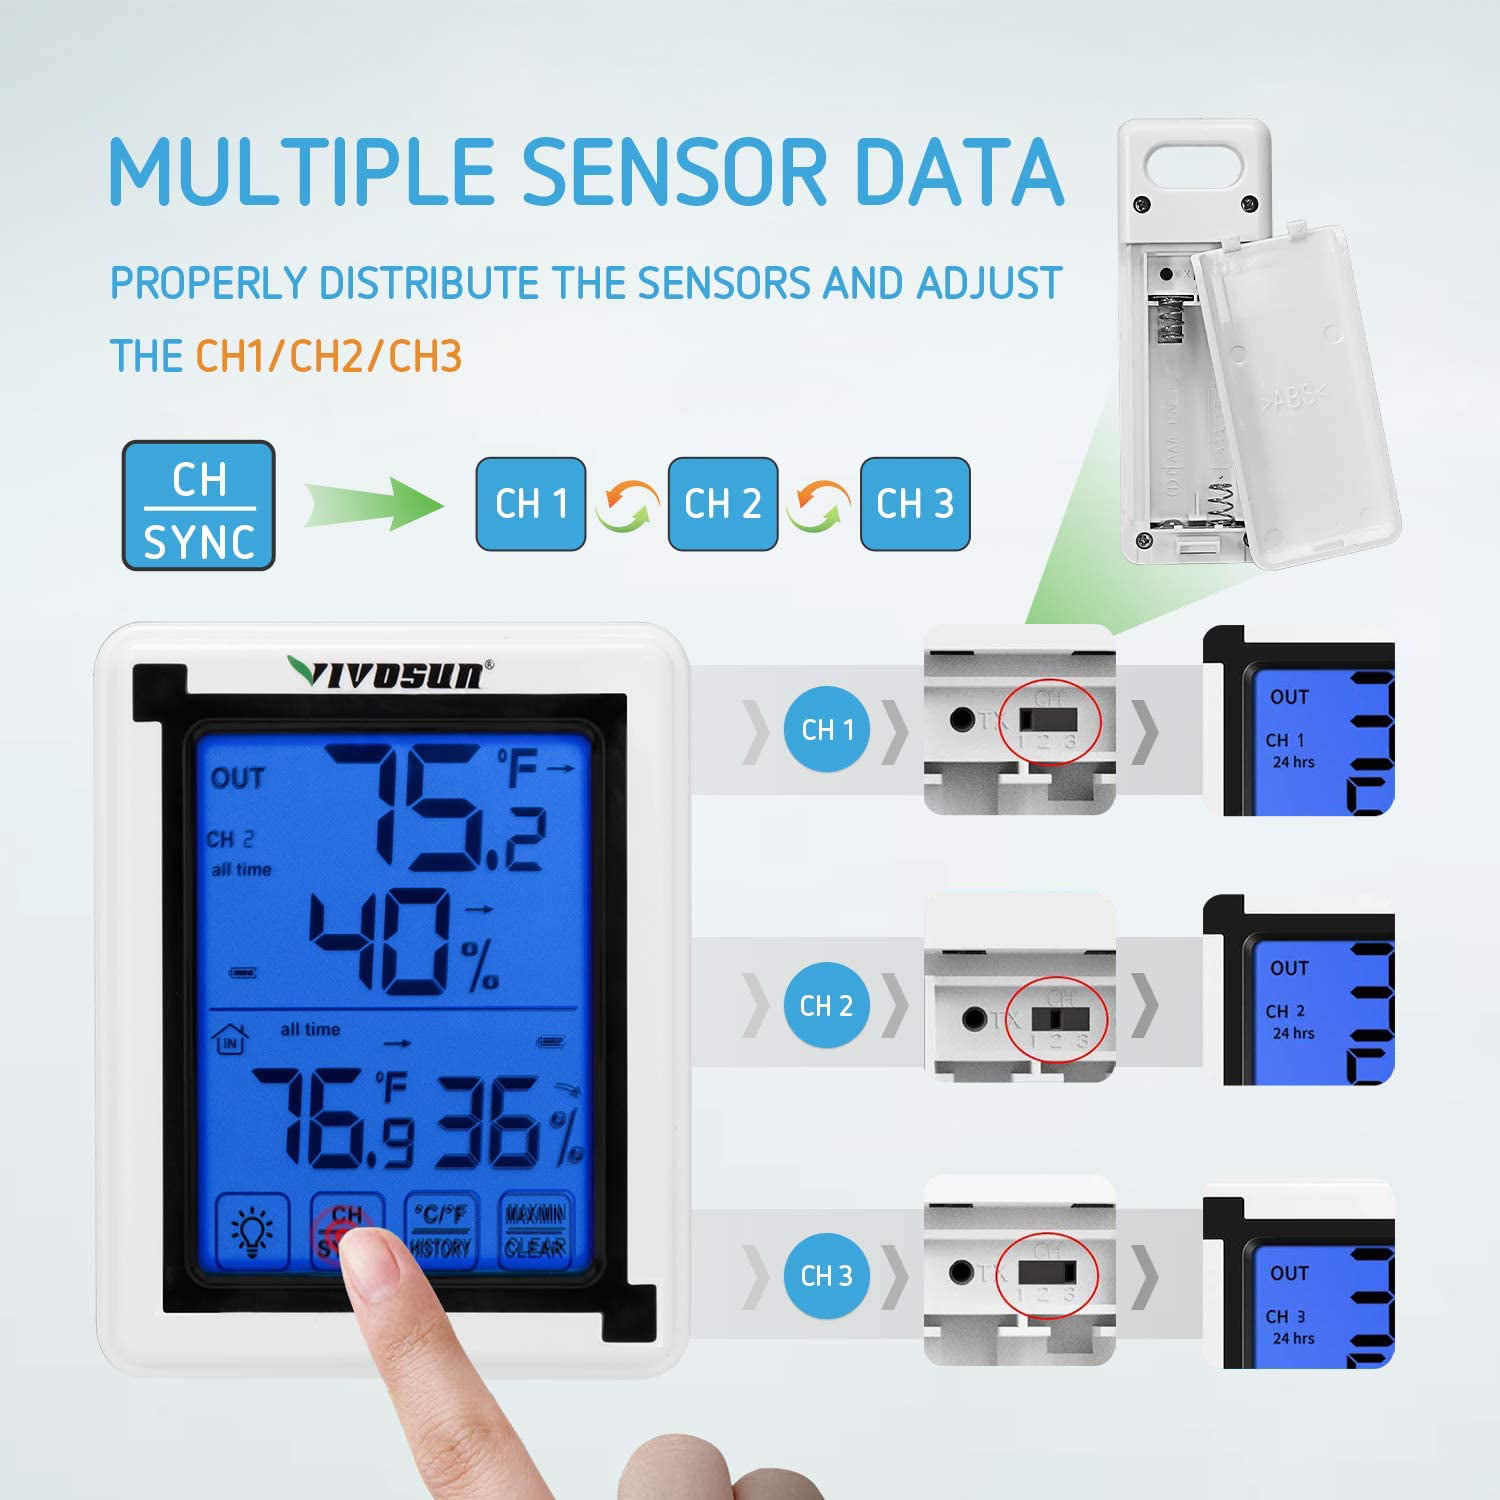 VIVOSUN Remote Sensor for Wireless Thermometer and Hygrometer - Walmart.com